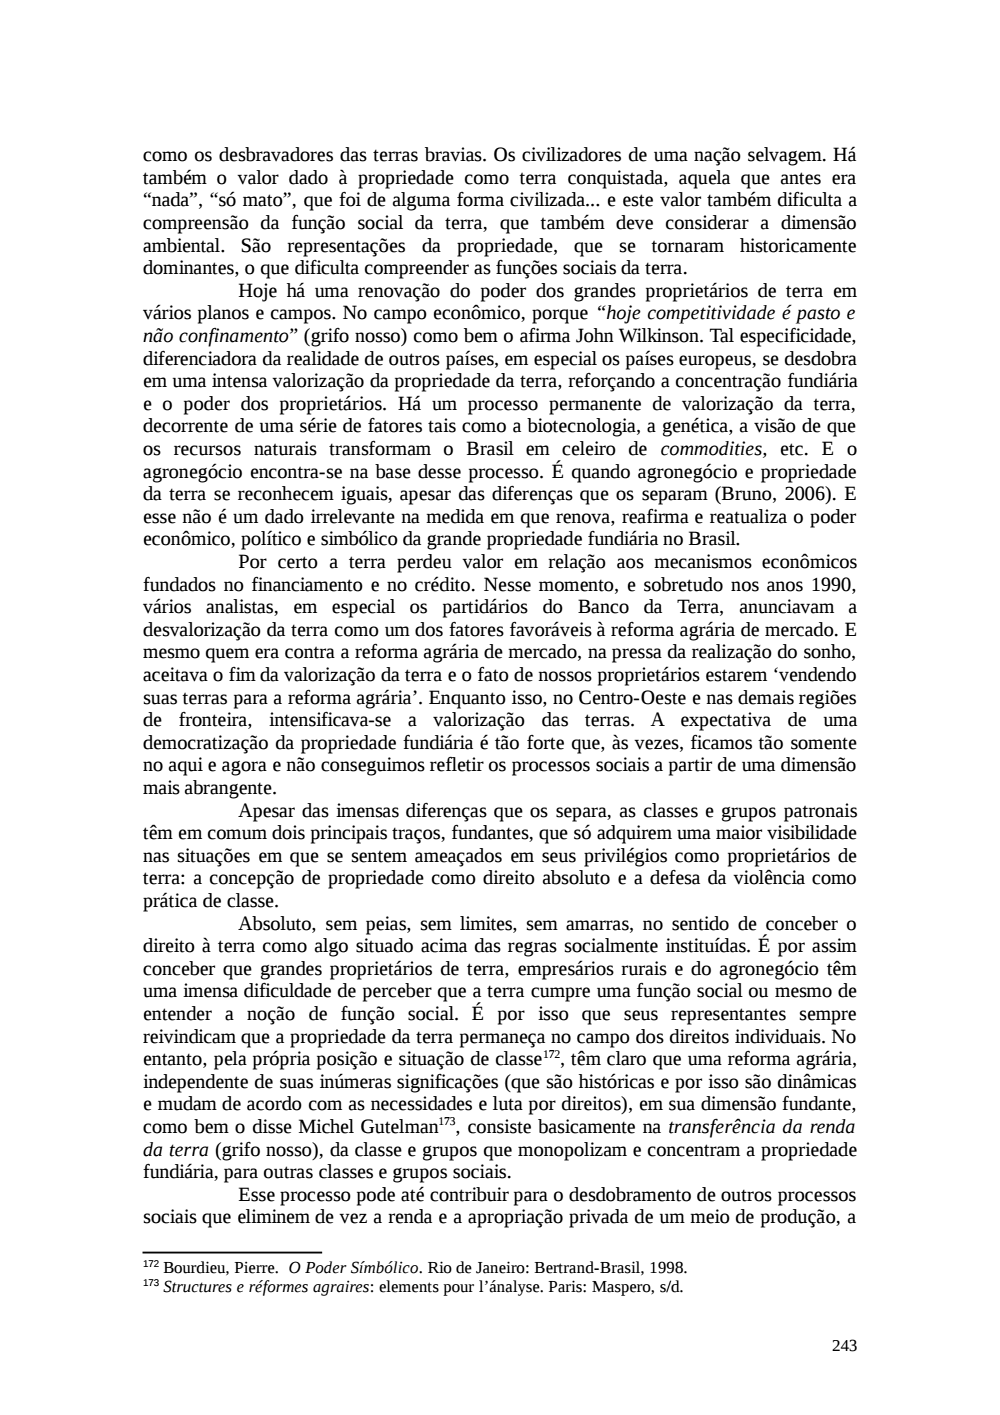 Page 243 from Relatório final da comissão